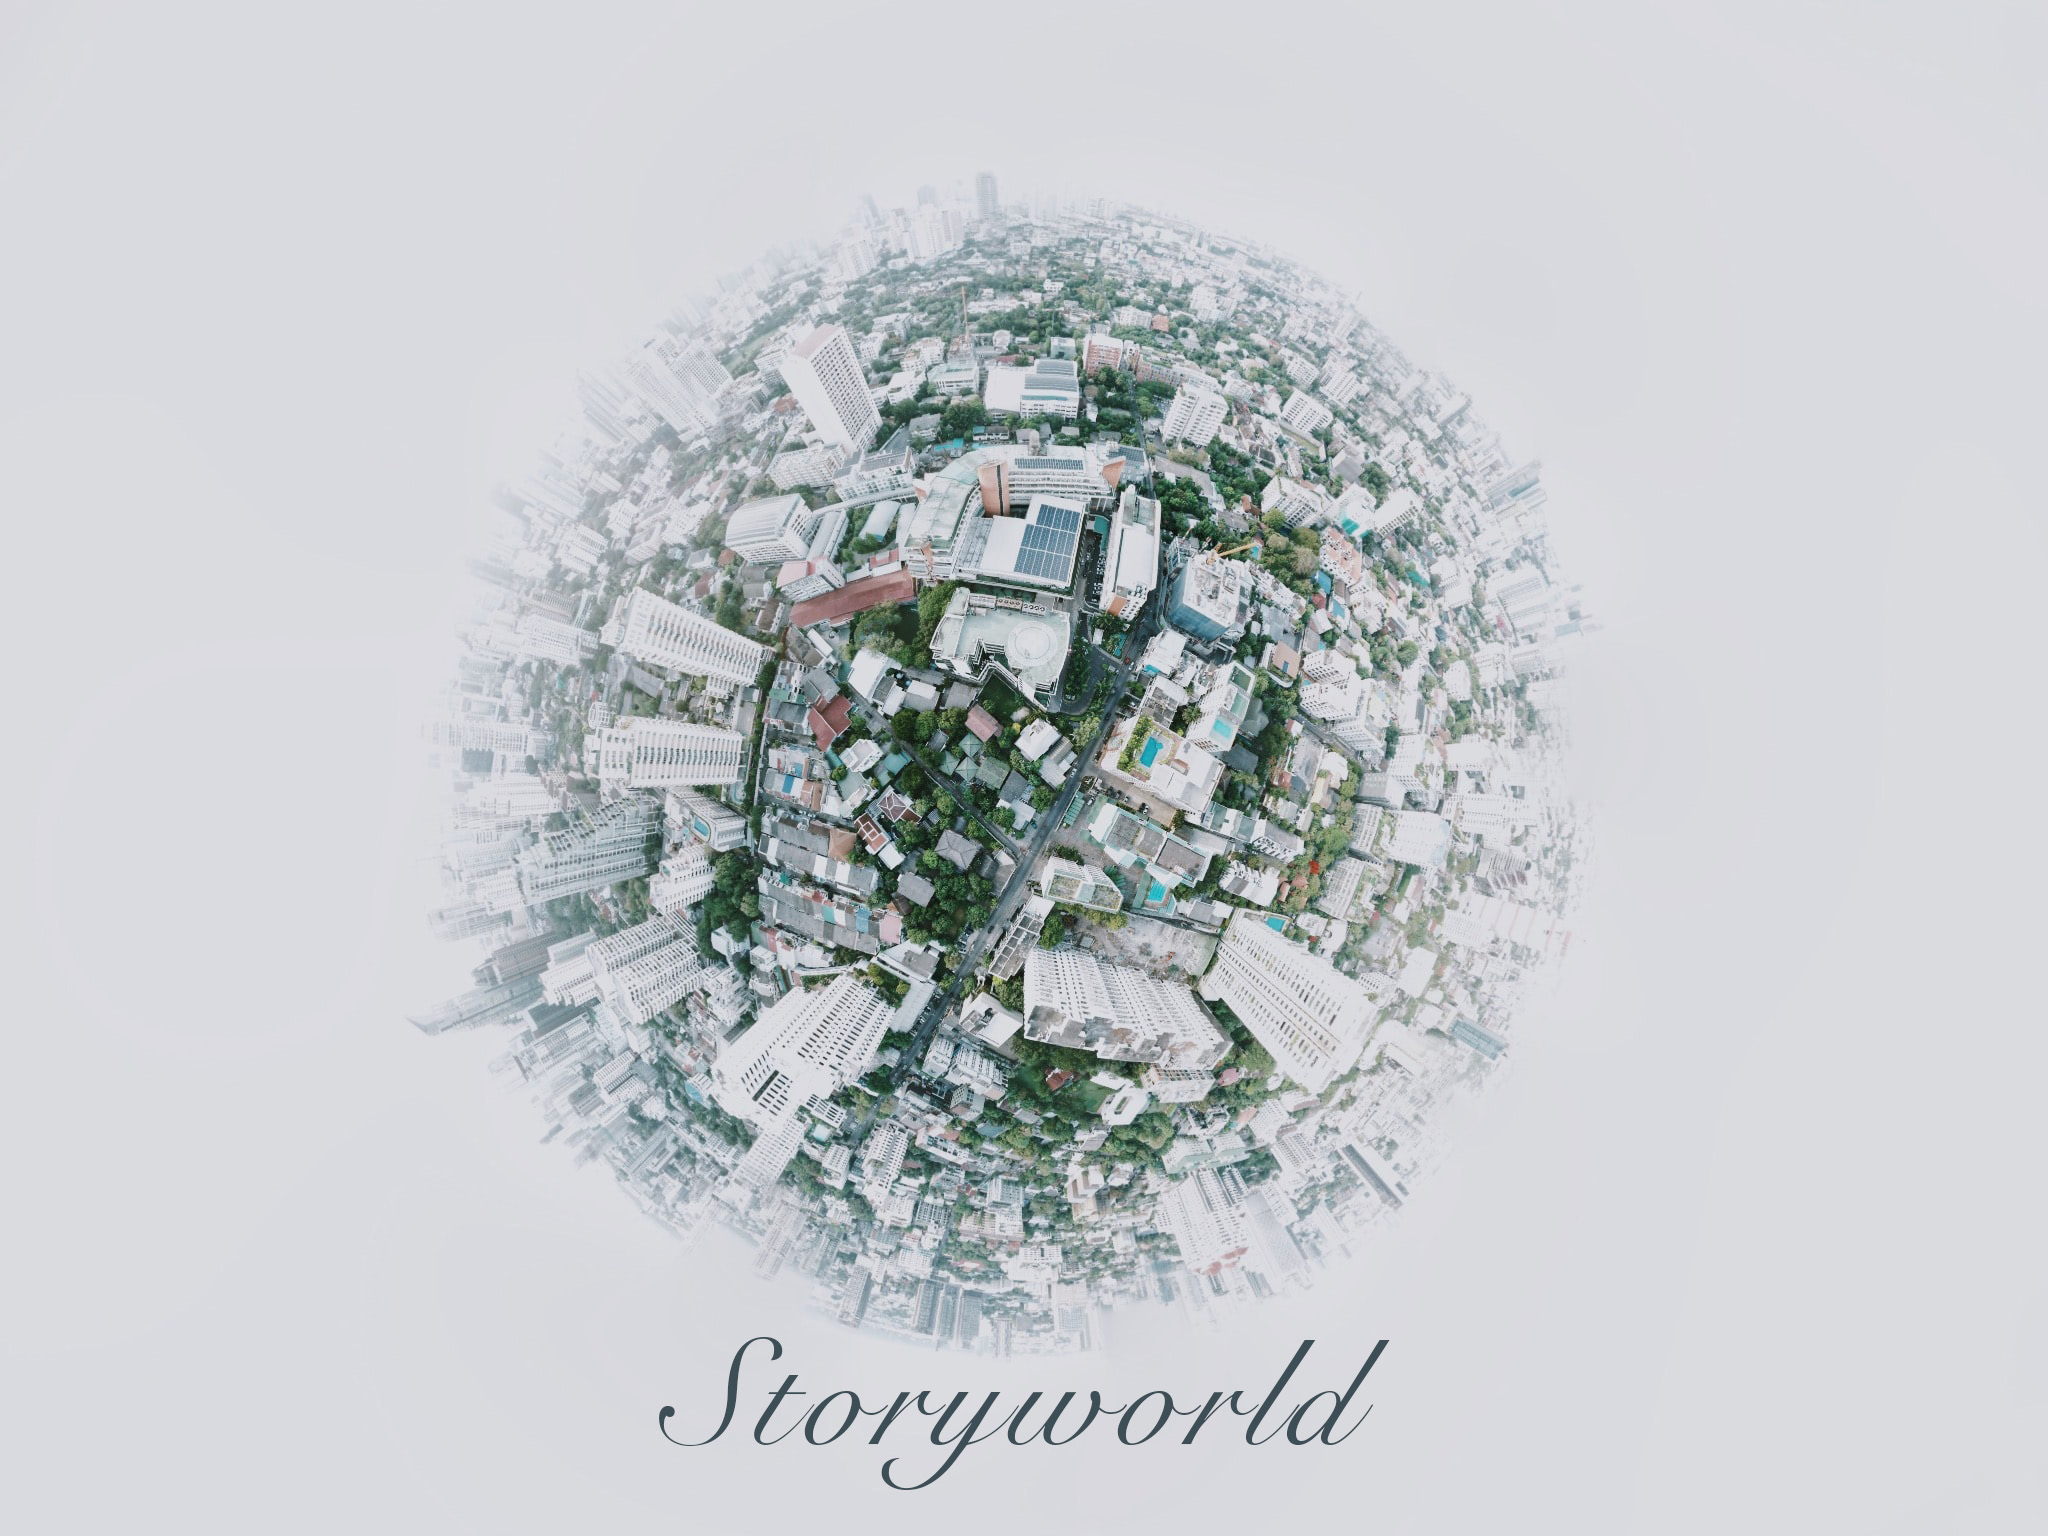 Storyworld – Die Welt, in der Geschichte geschrieben wird